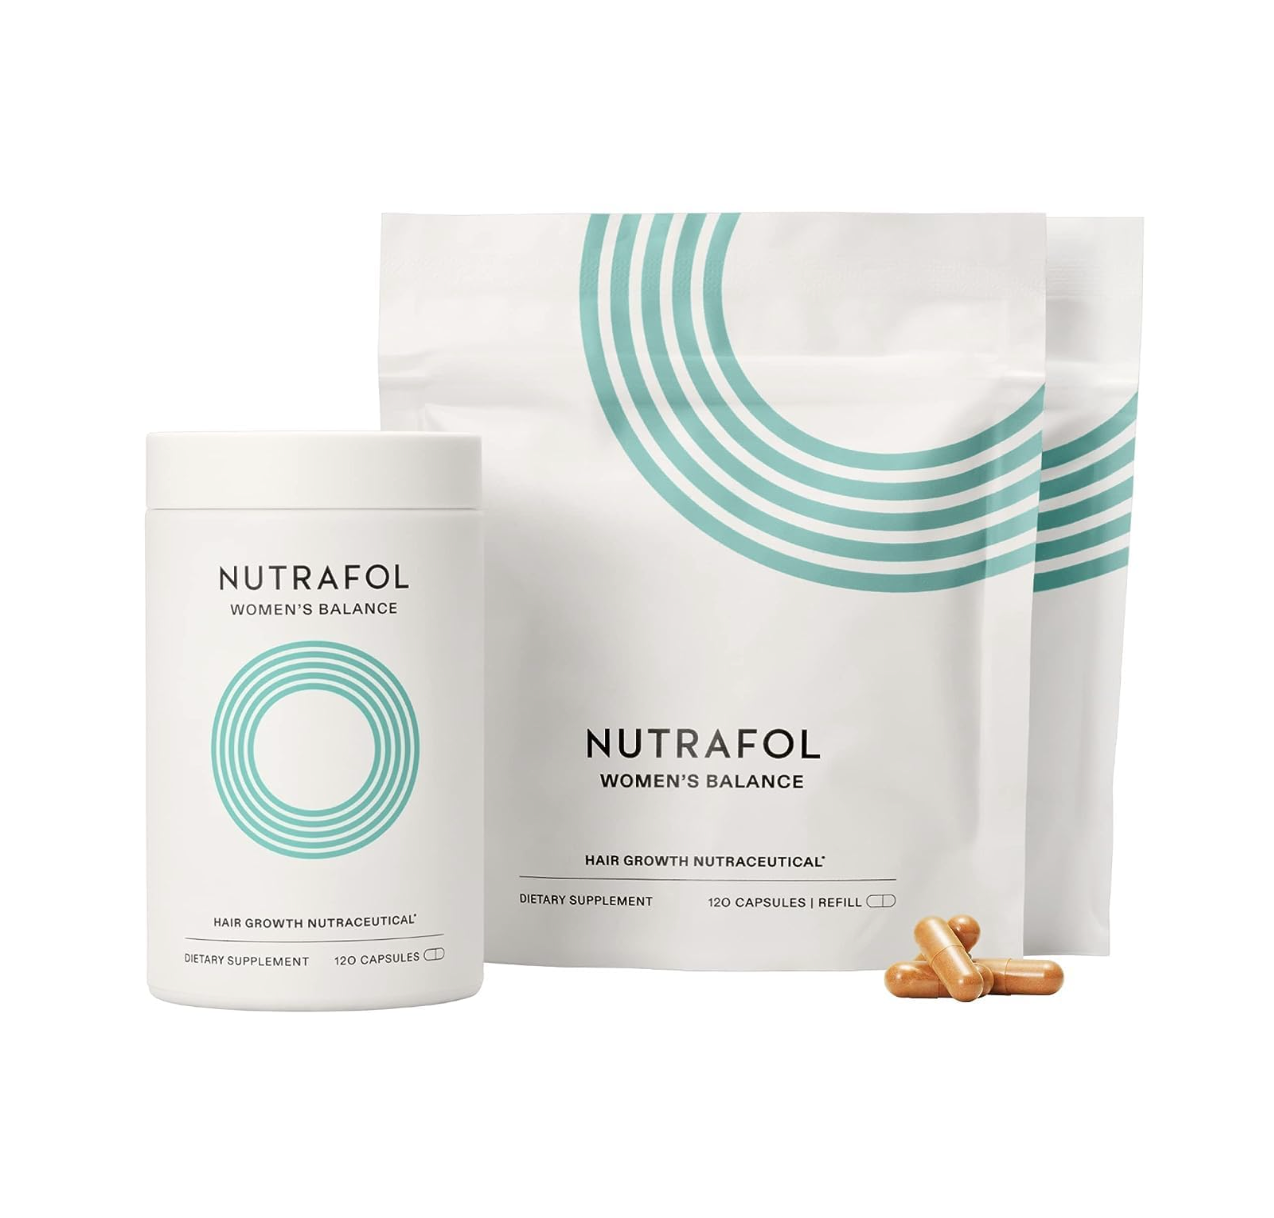 Nutrafol Women's Balance: Hair Growth Nutraceutical